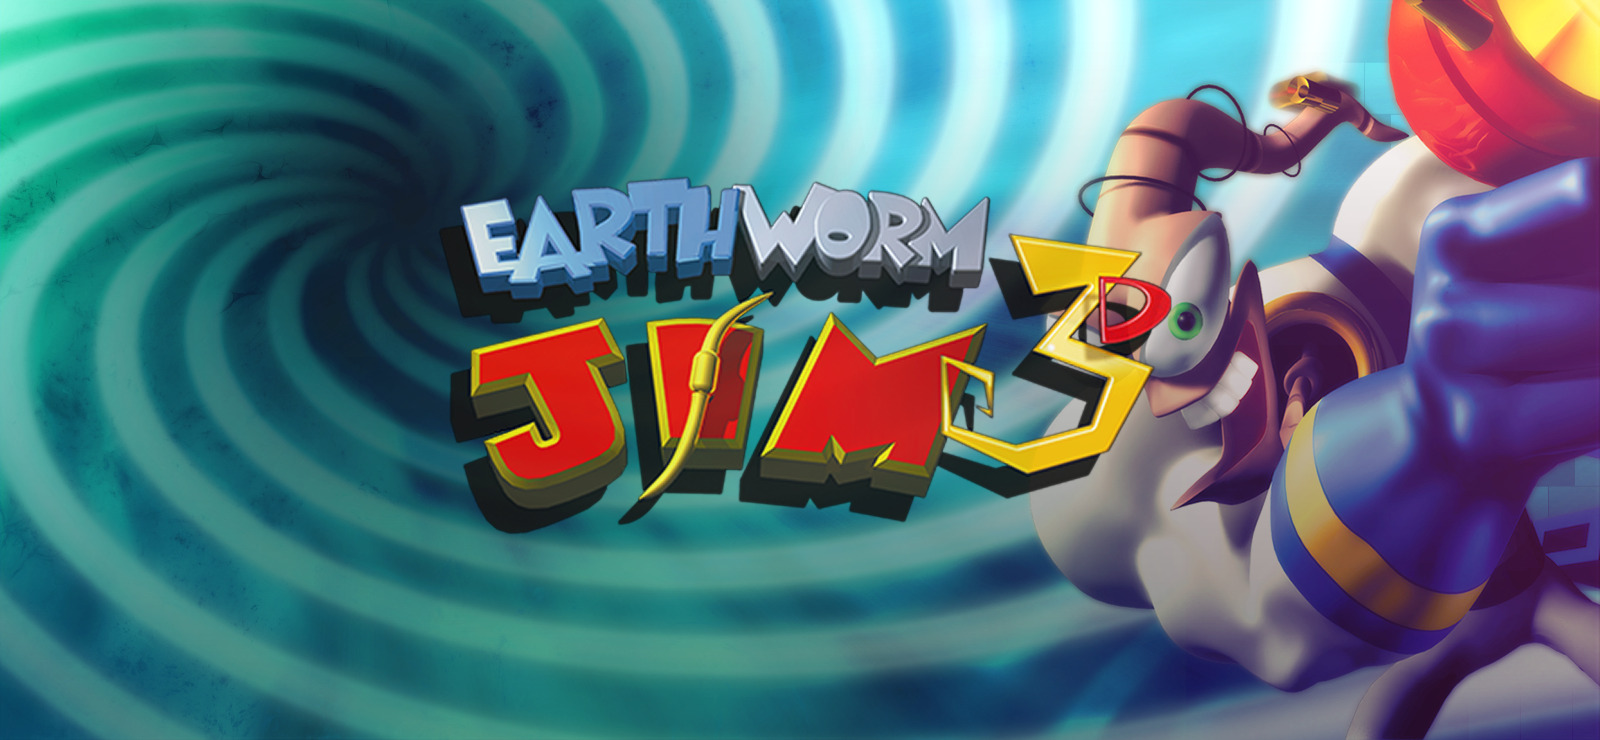 download earthworm jim cartoon 2022